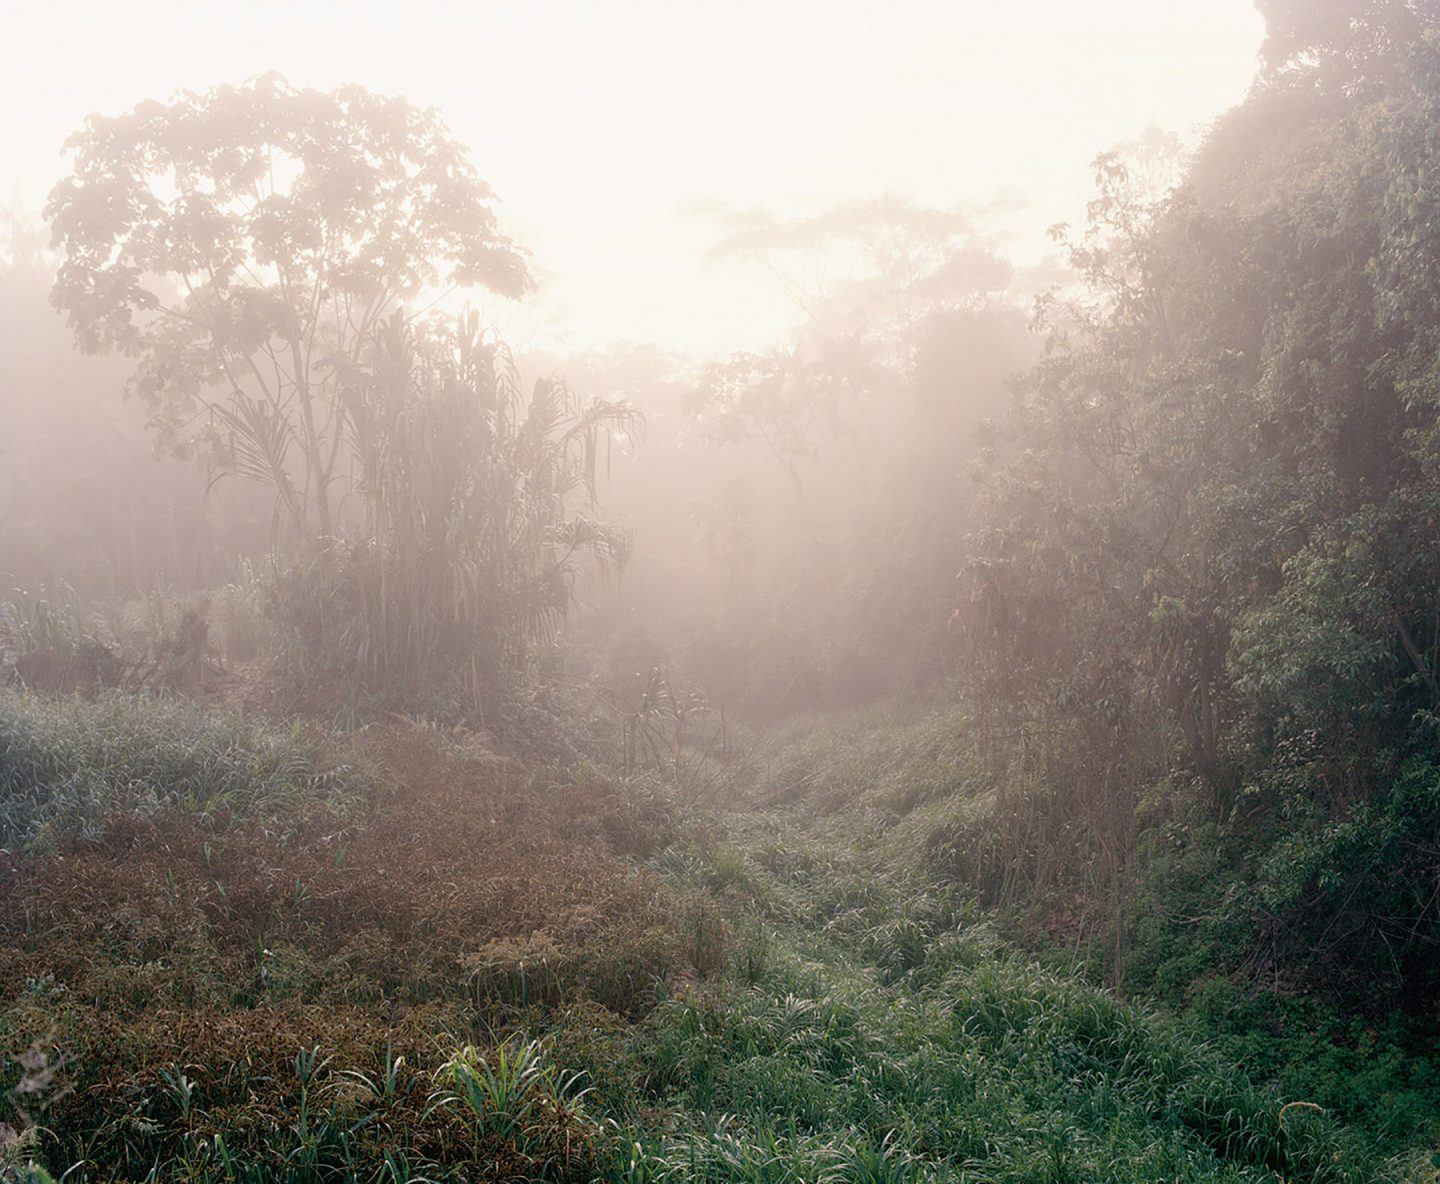 IGNANT-Photography-Yann-Gross-The-Jungle-Book-13